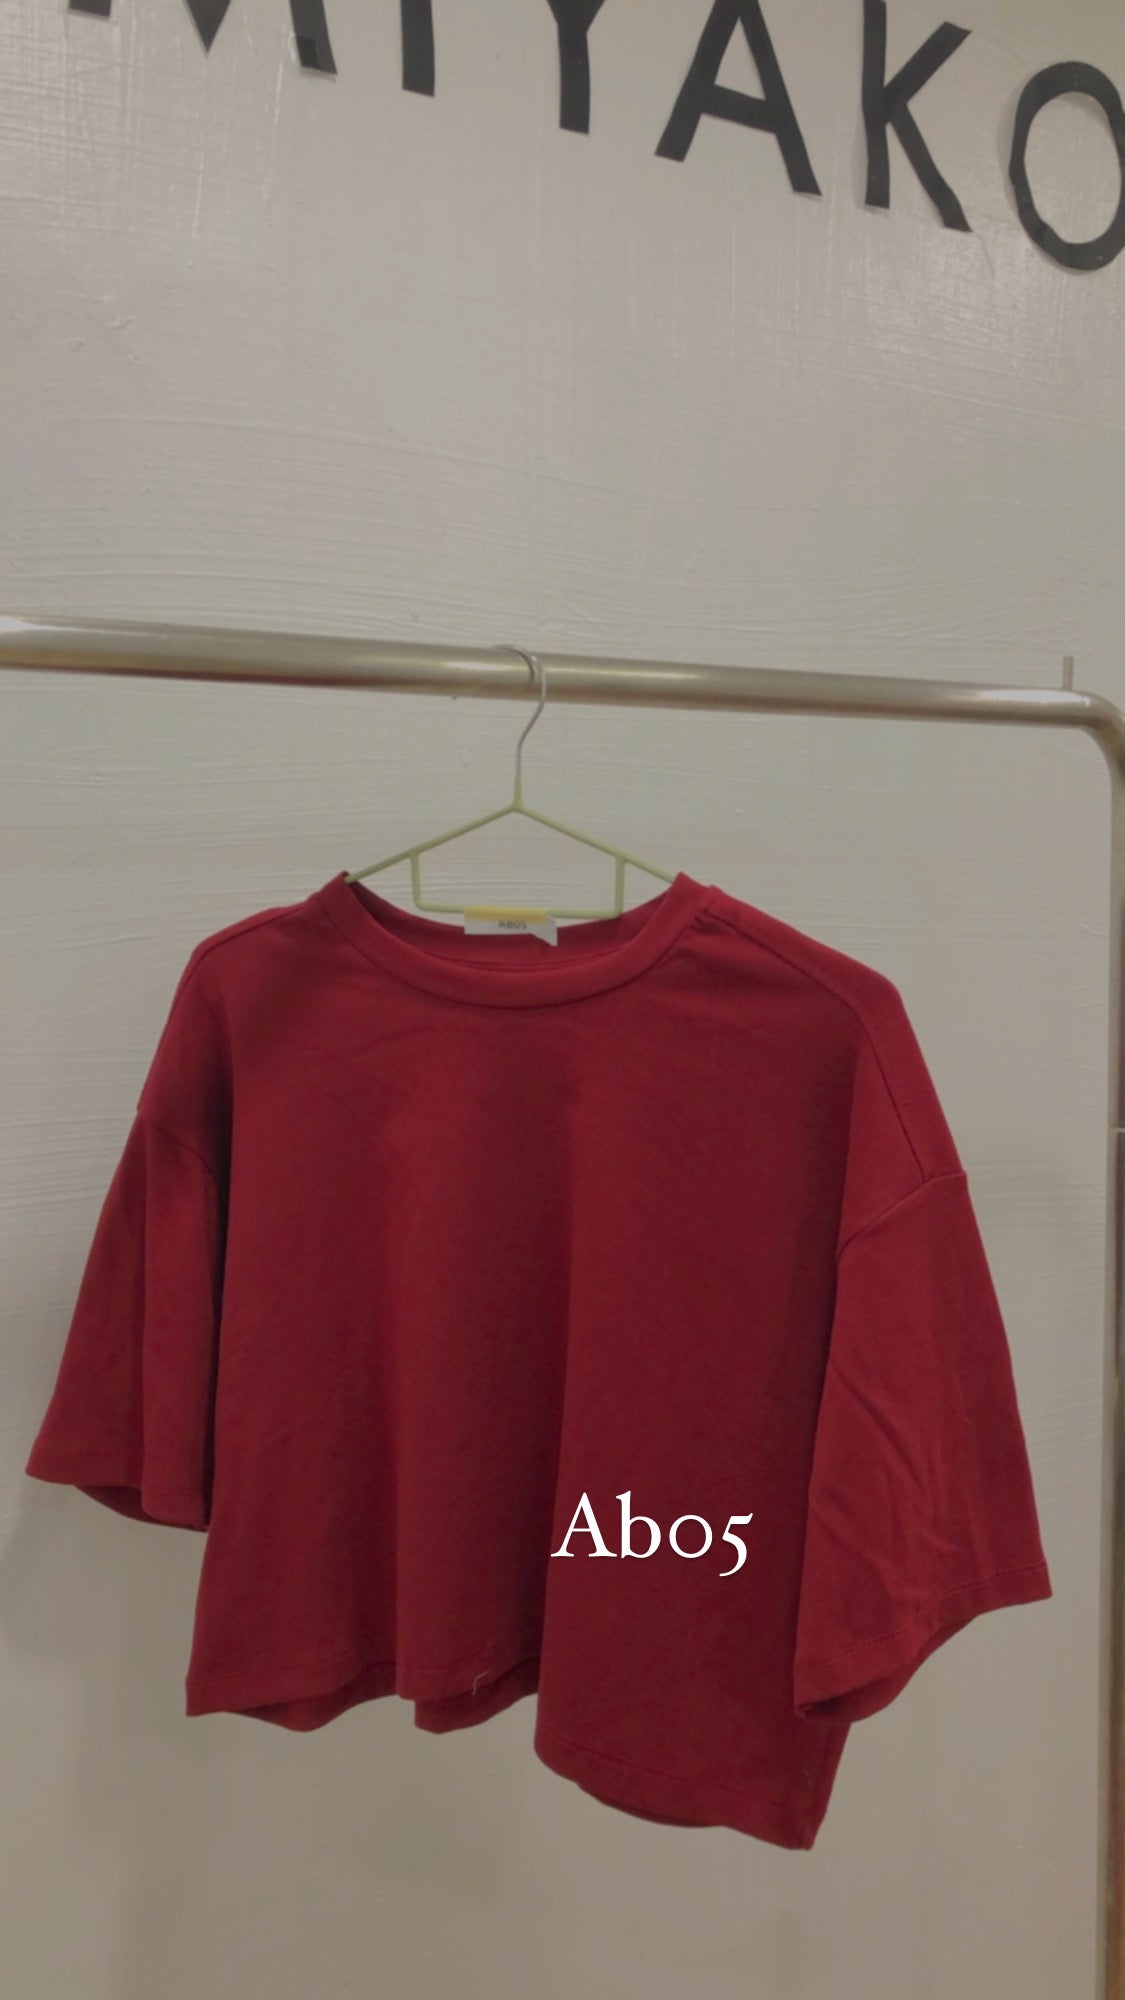 AB05 Short Sleeve Crop Top in Maroon